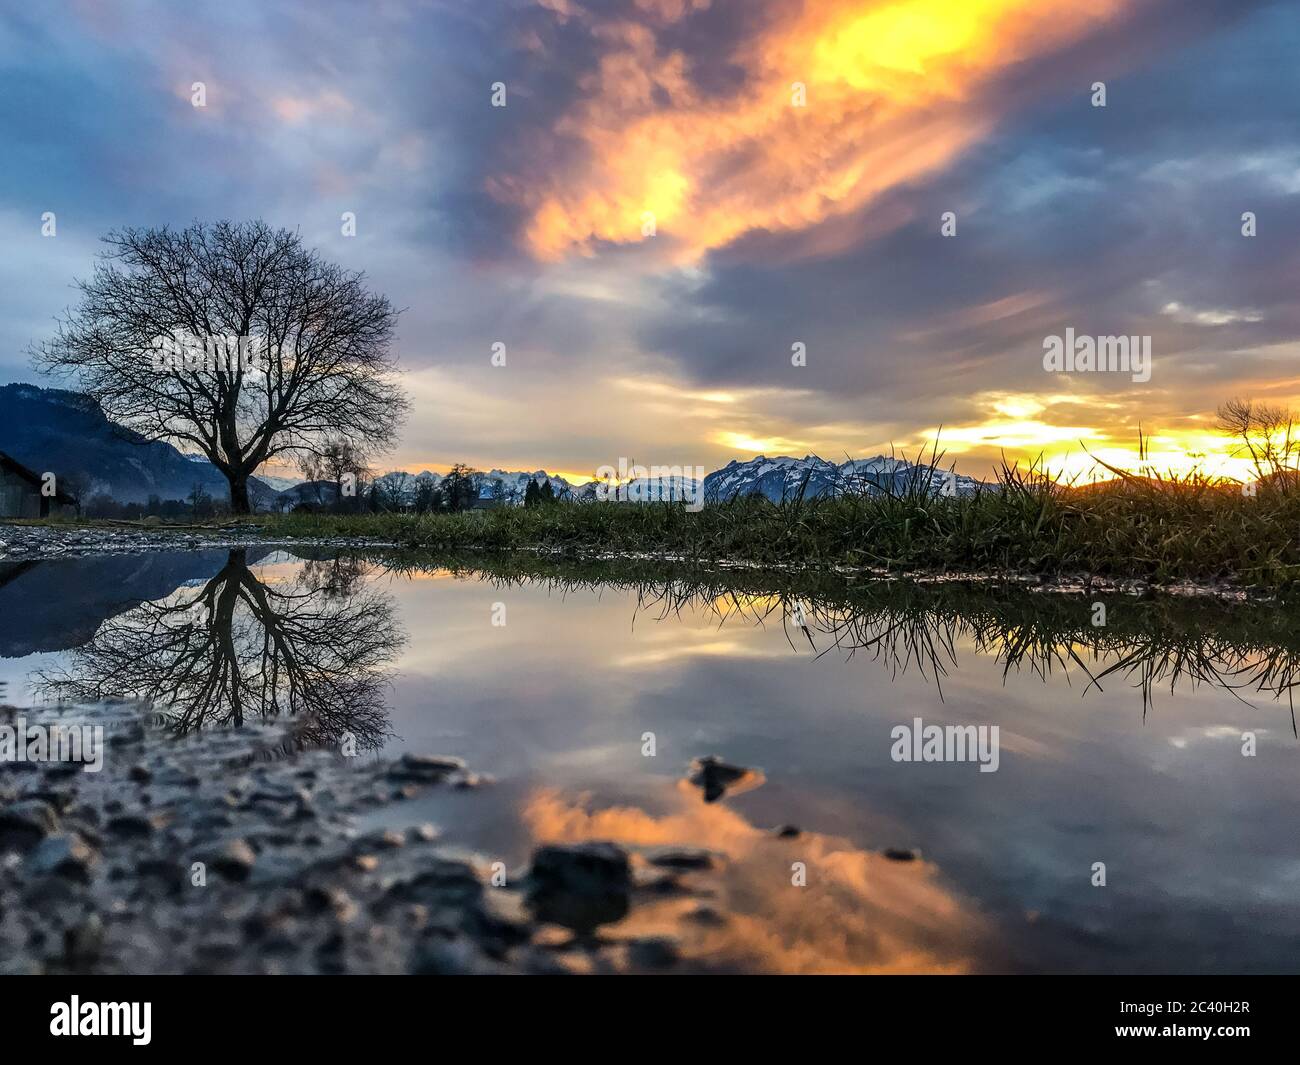 Spiegelbild, ein Baum spiegelt sich in einer Pfütze, Vorarlberger Bergen, Säntis und das Rheintal im Sonnenschein. Dornbirn, Austria, wunderschön Foto Stock